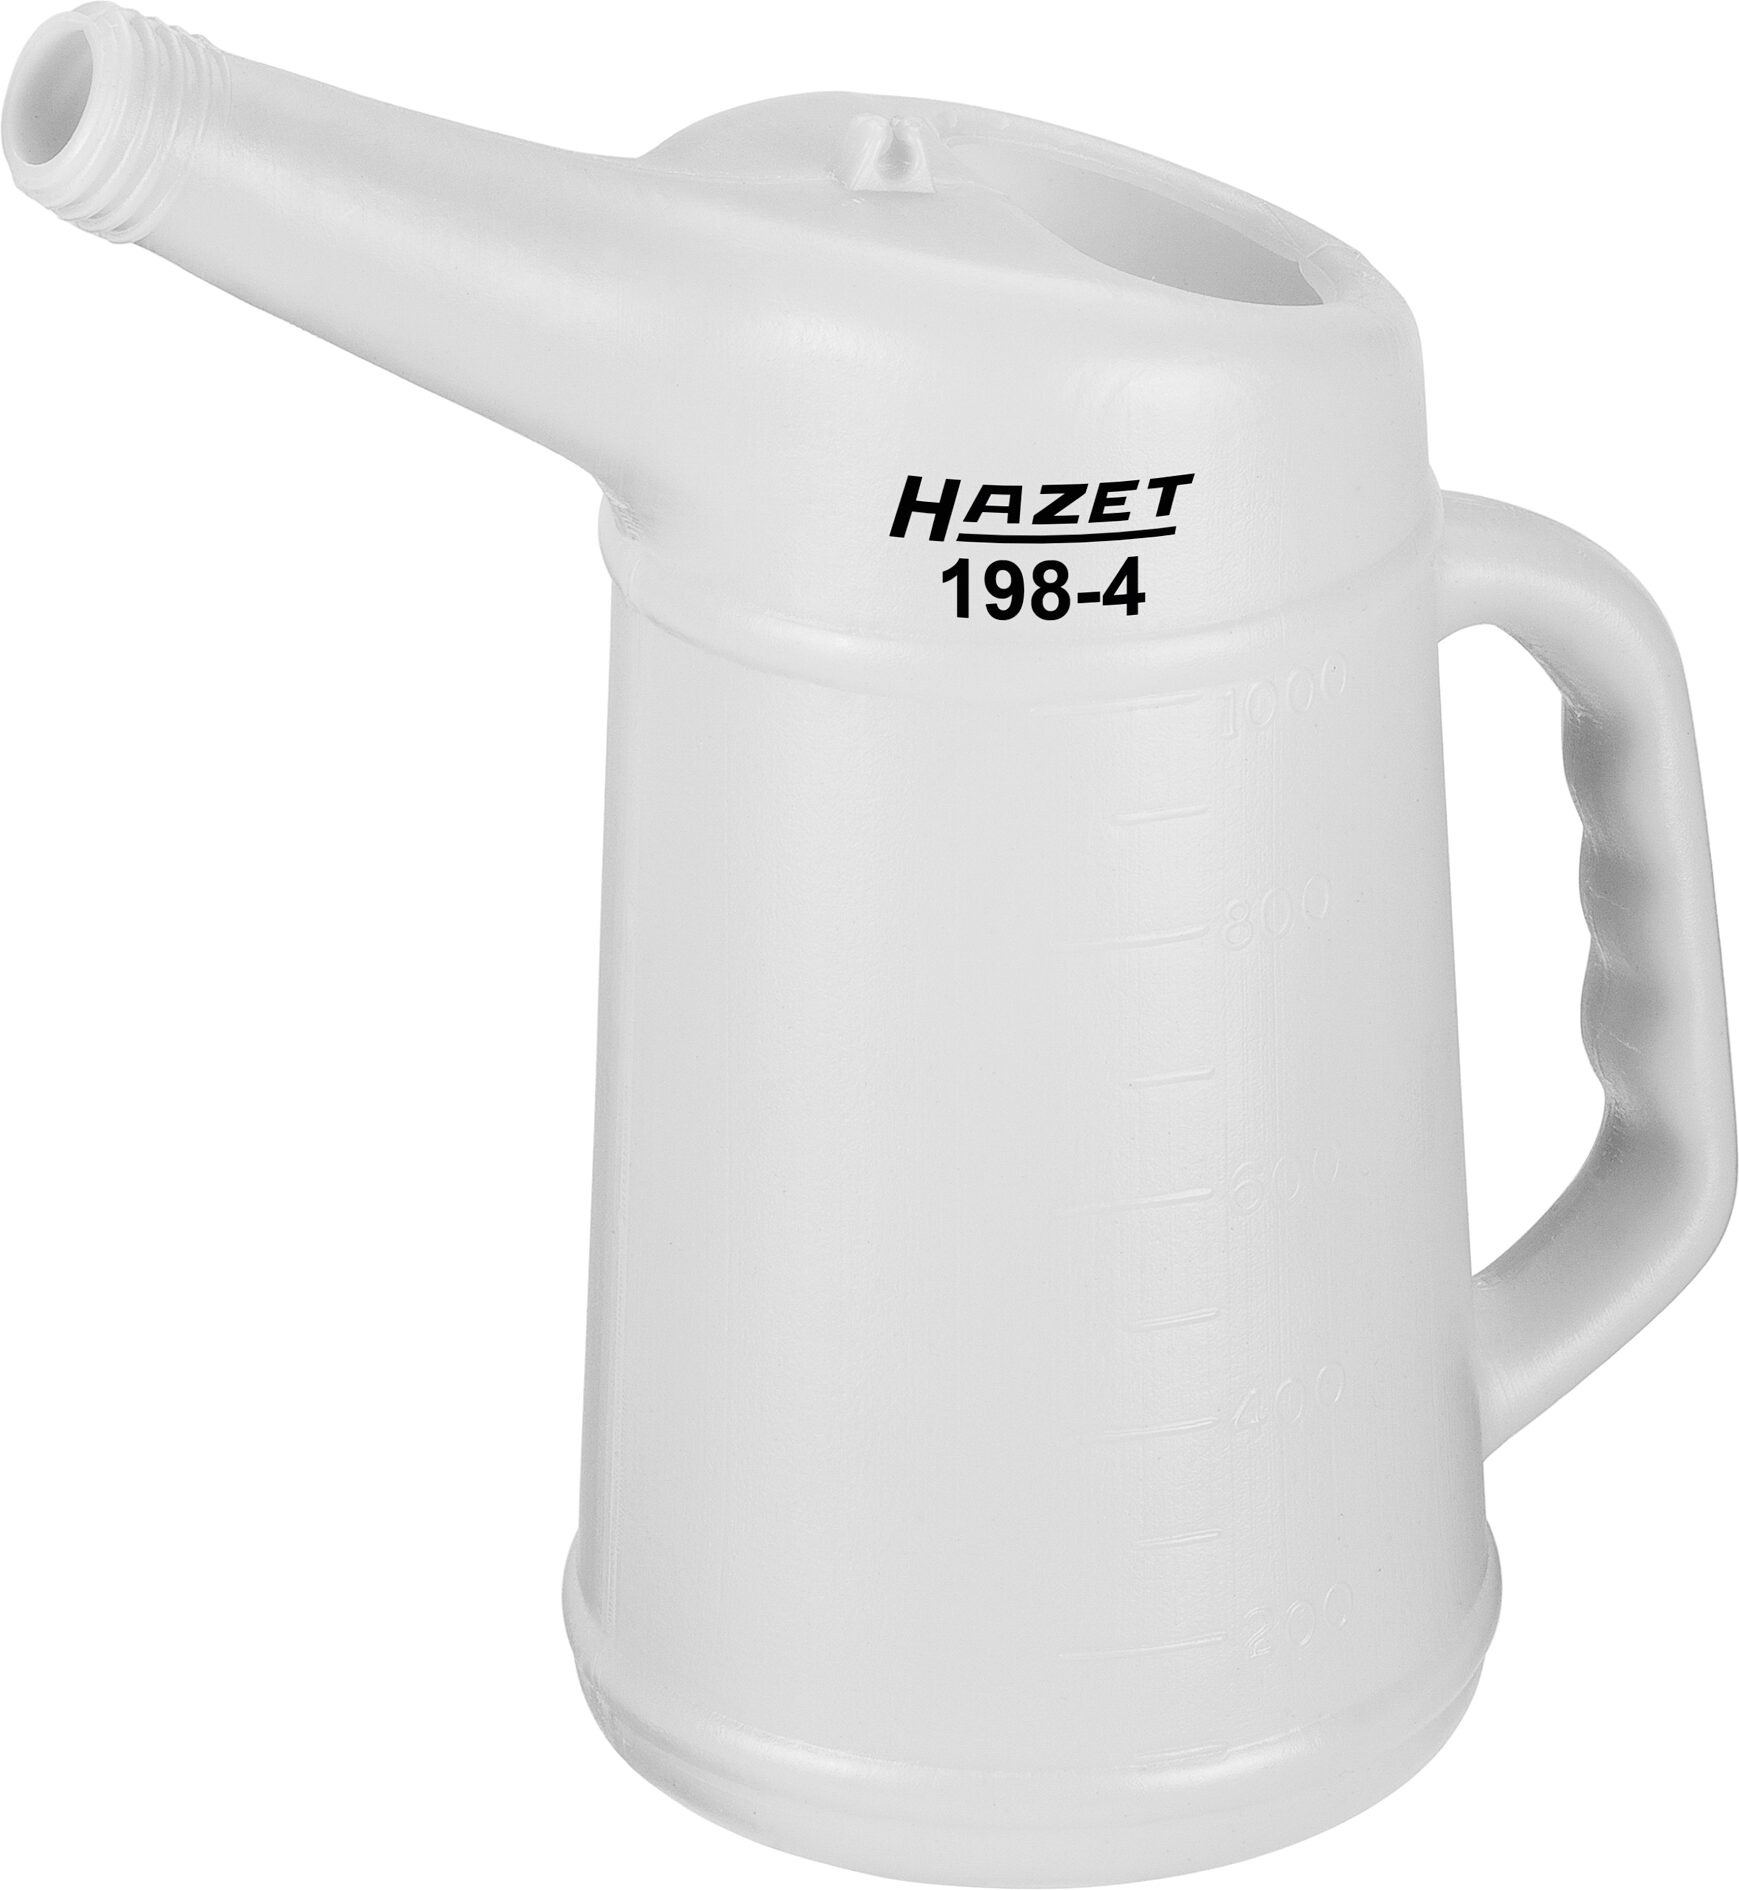 HAZET Mess-Becher 198-4